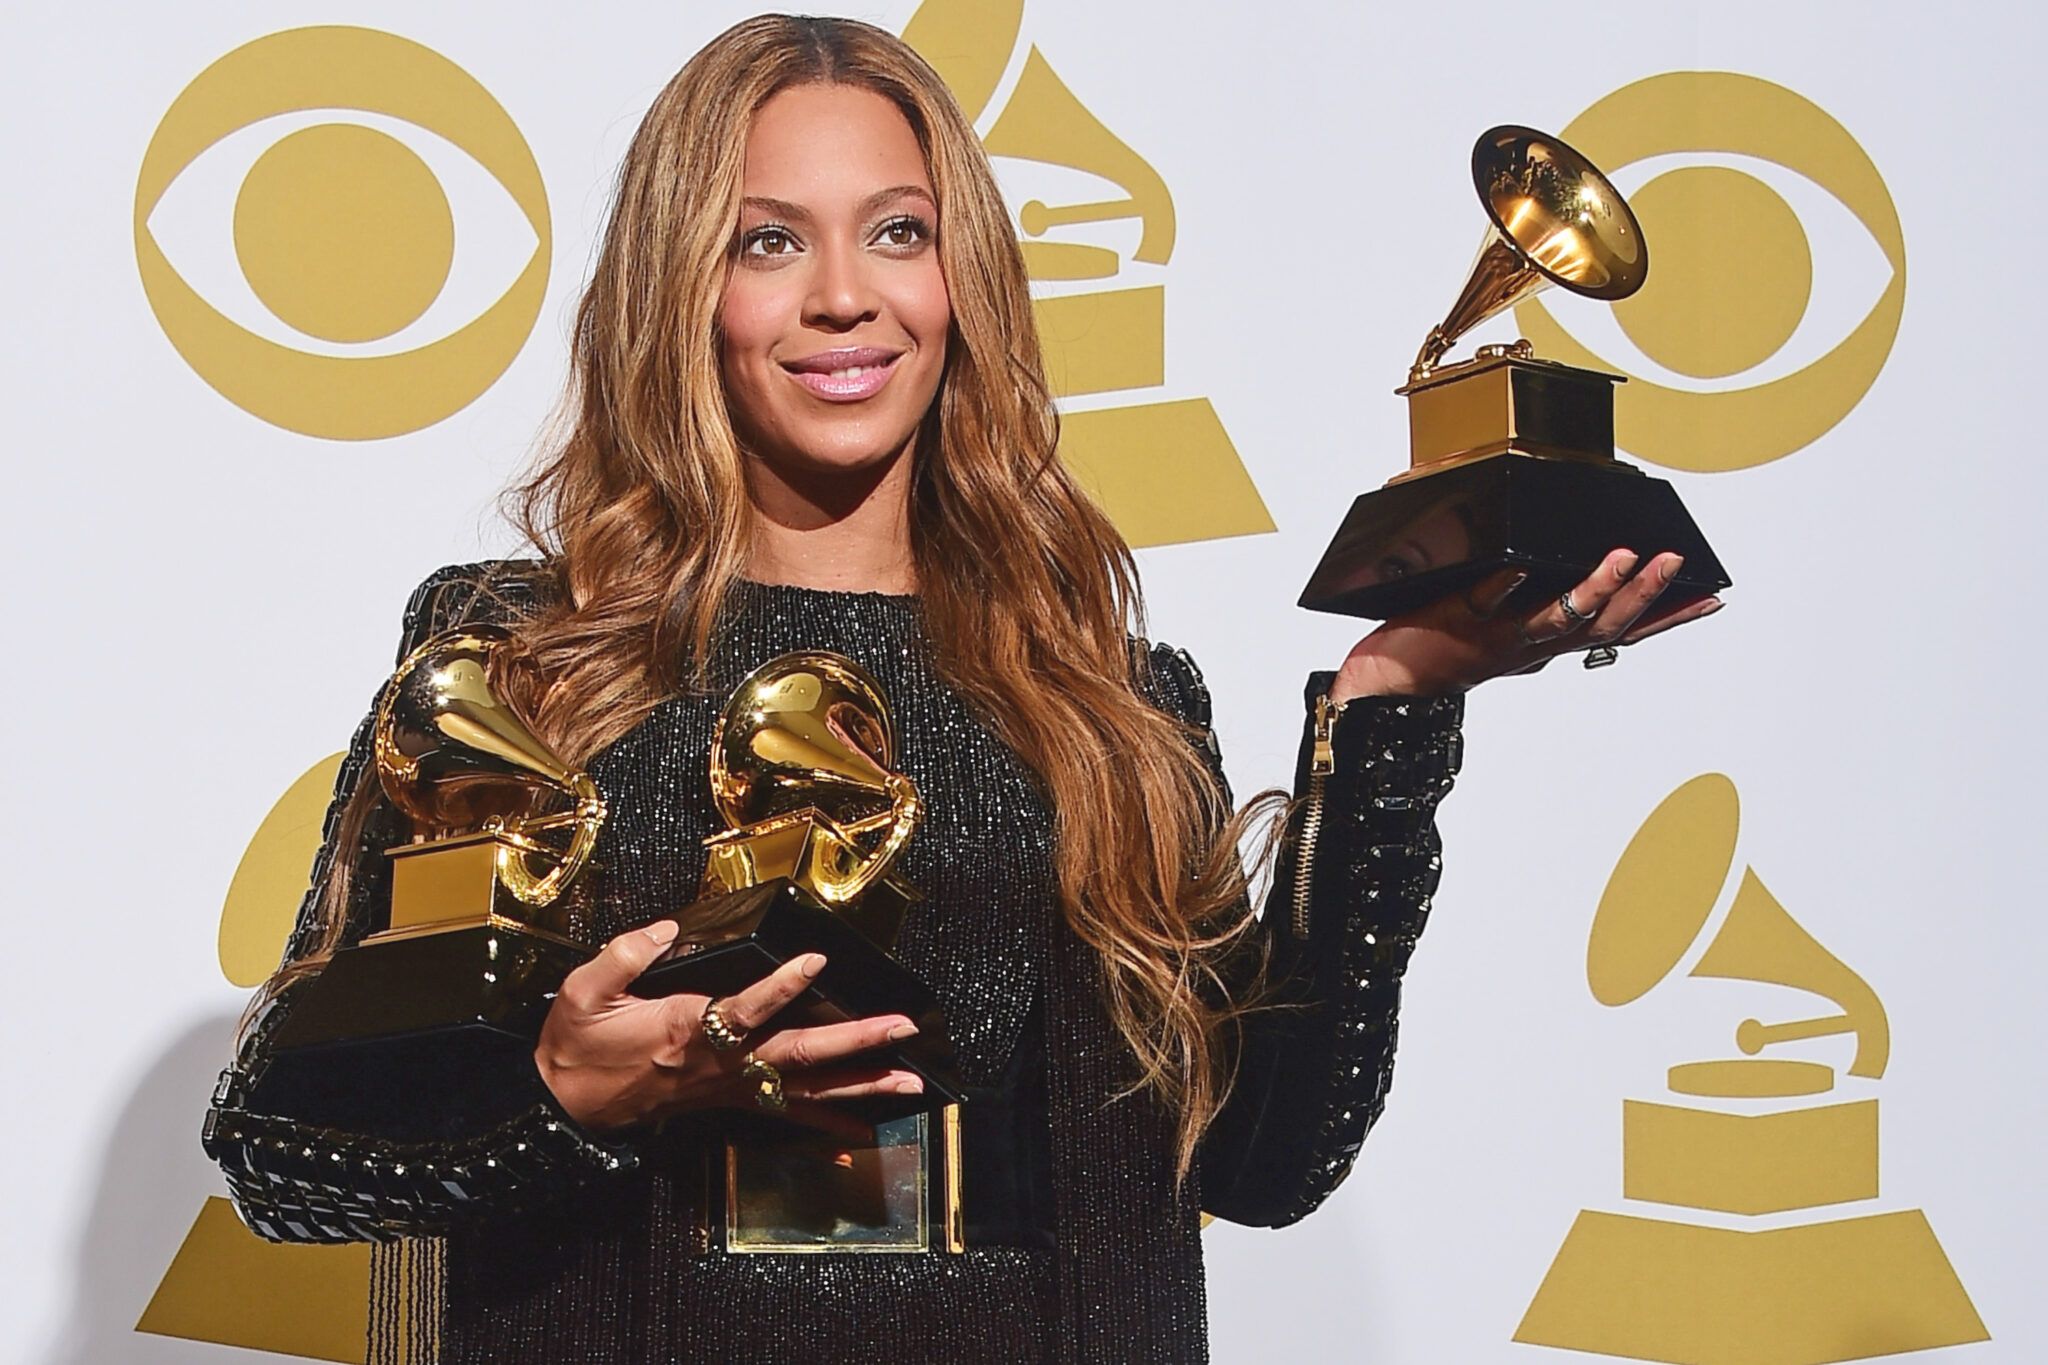 Os 10 artistas mais premiados do Grammy saiba quais são